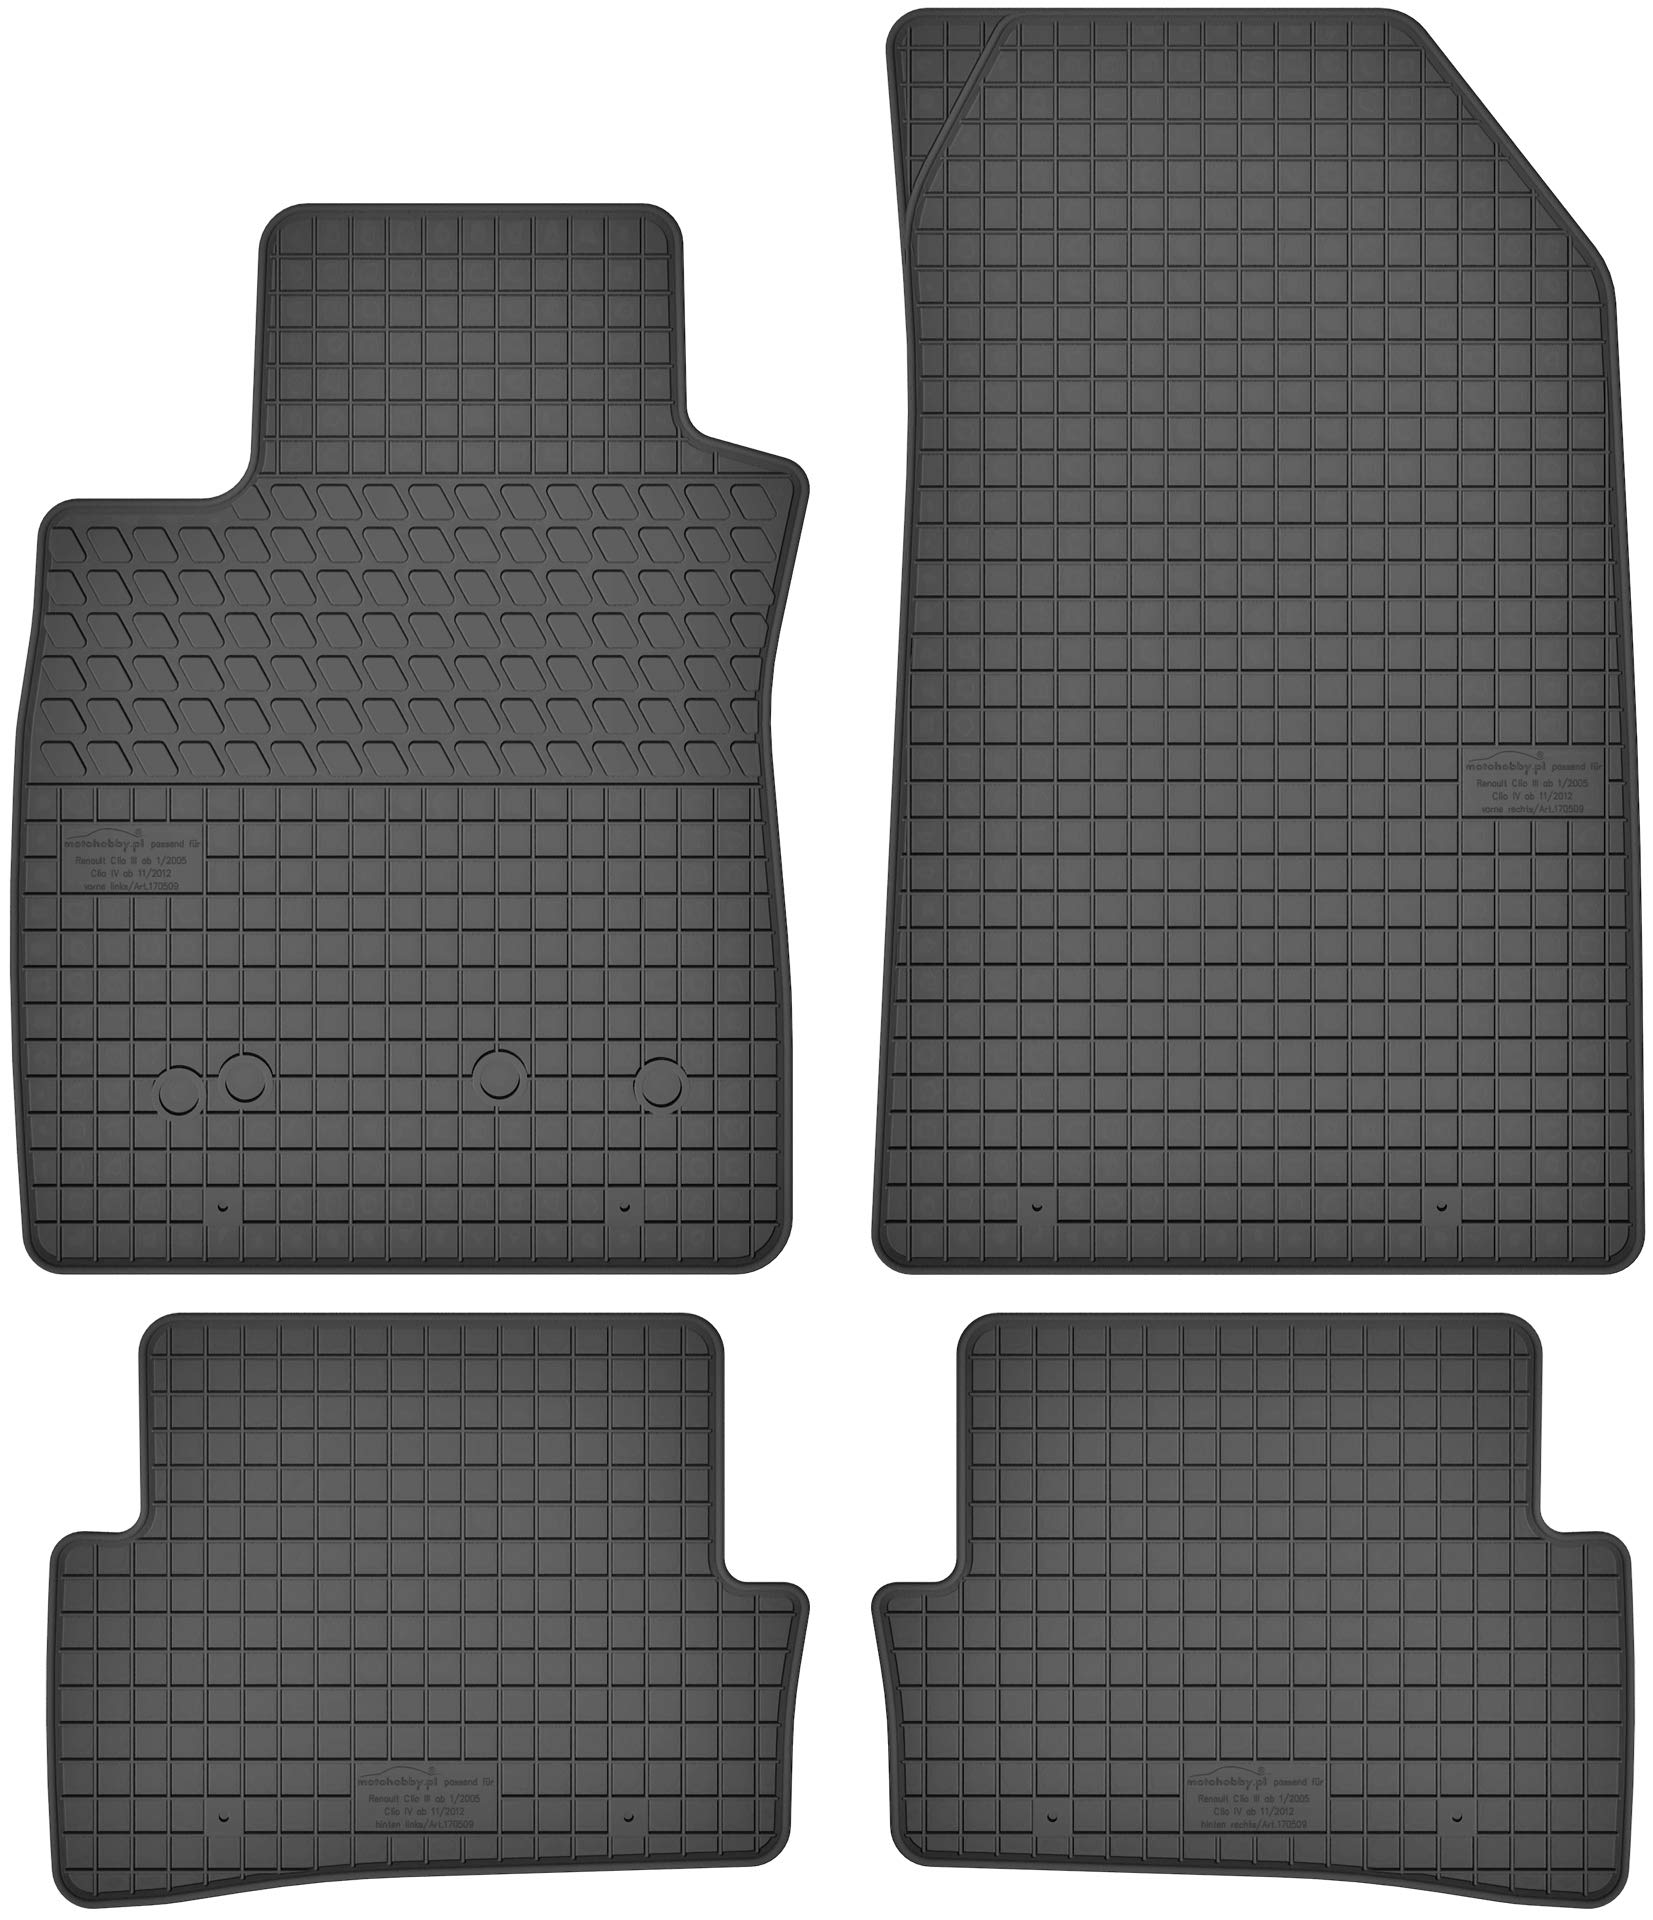 Gummimatten Gummi Fußmatten Satz für Renault Clio III (2005-2012) / Clio IV (ab 2012) - Passgenau von Motohobby